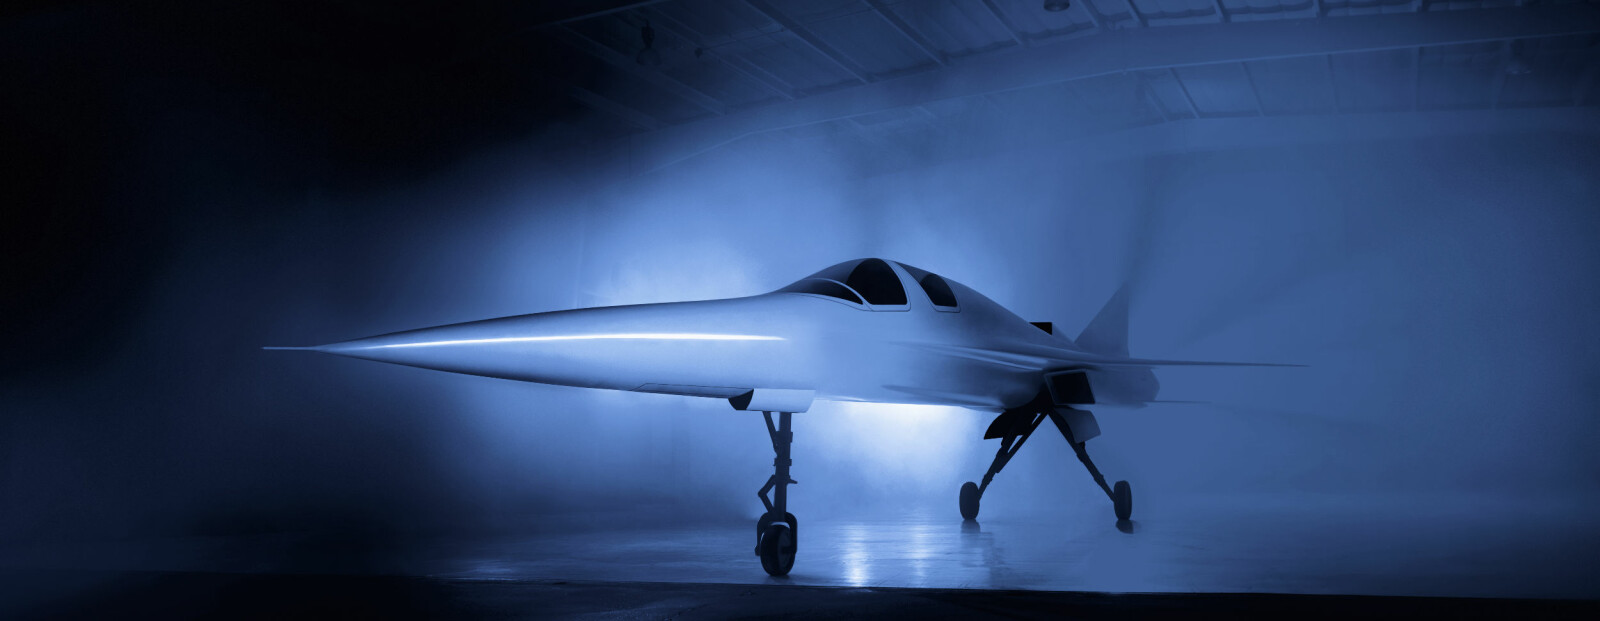 TEST: XB-1 skal på vingene i løpet av året for å testet ut Boom-teknologien.